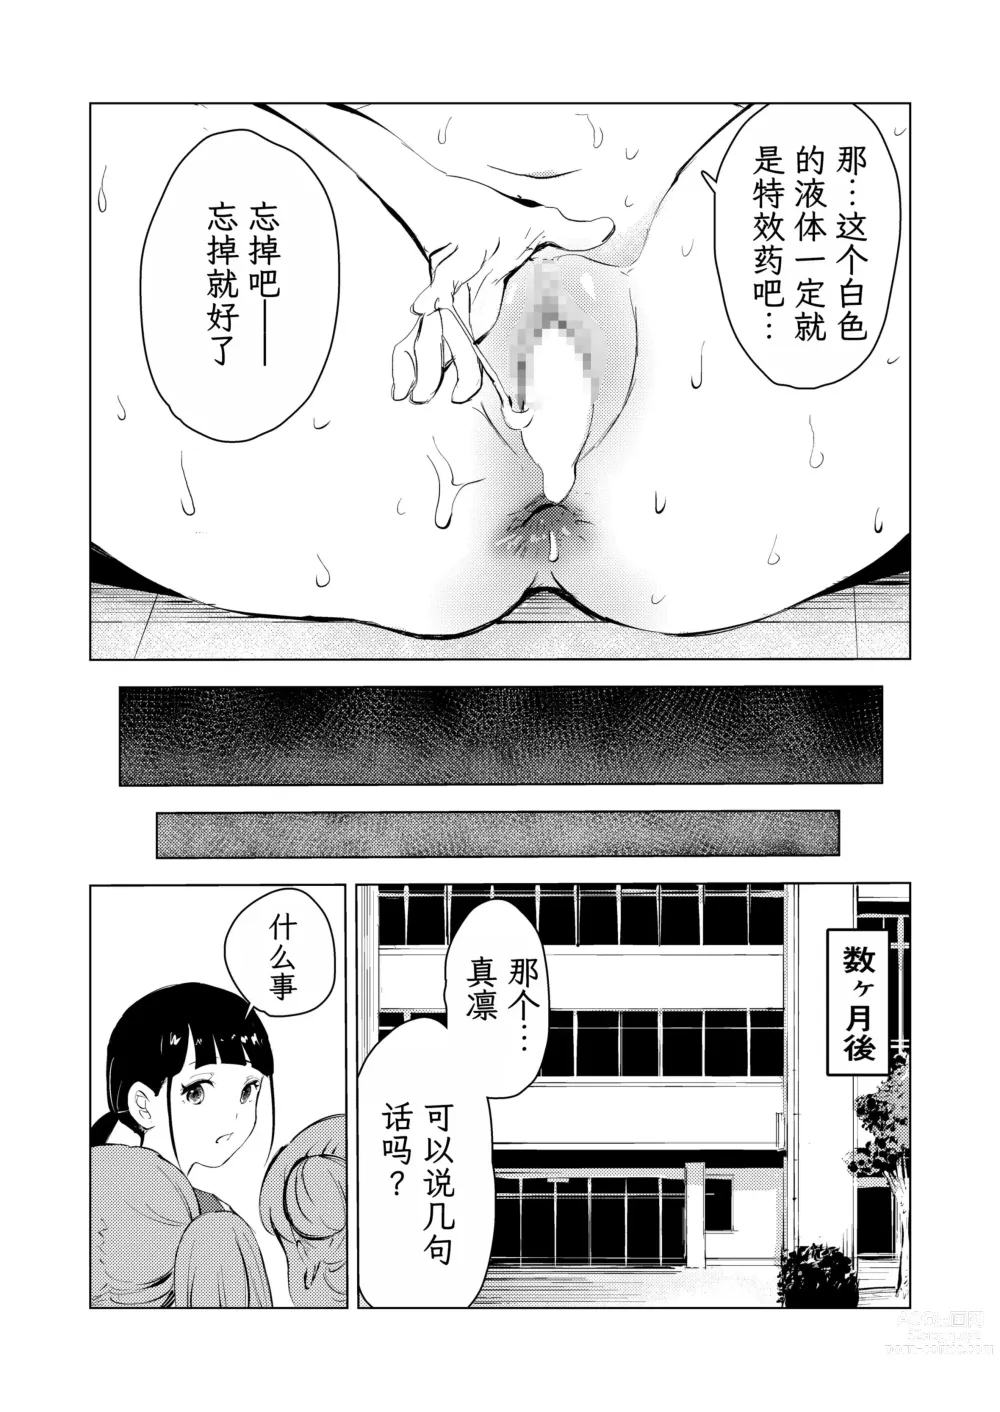 Page 86 of doujinshi 40-sai no Mahoutsukai 3